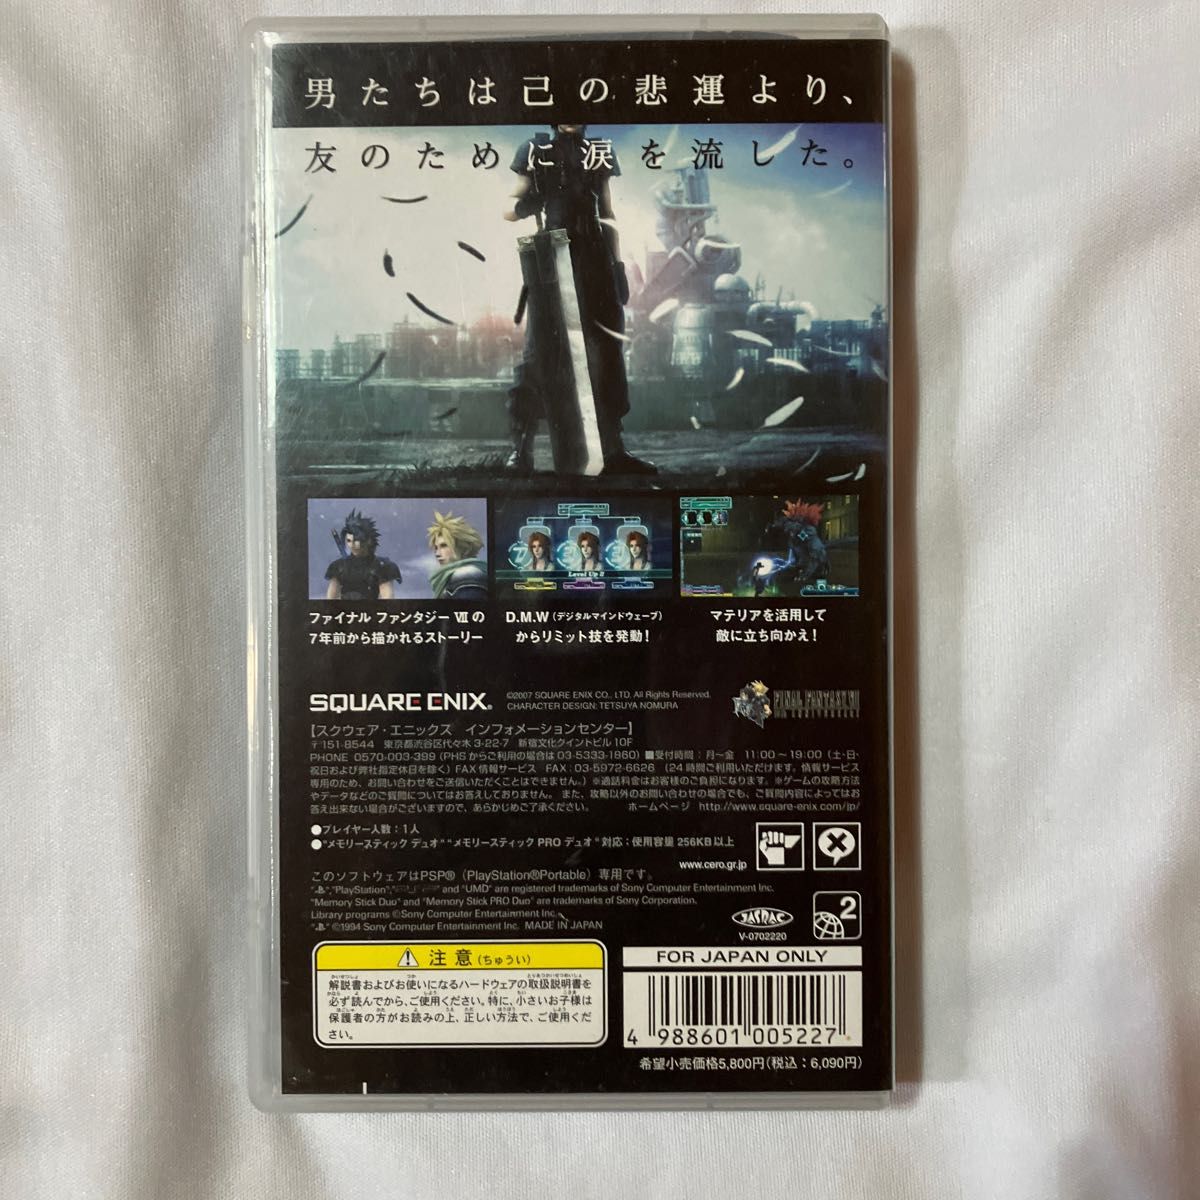 【PSP】 クライシス コア -ファイナルファンタジー VII-